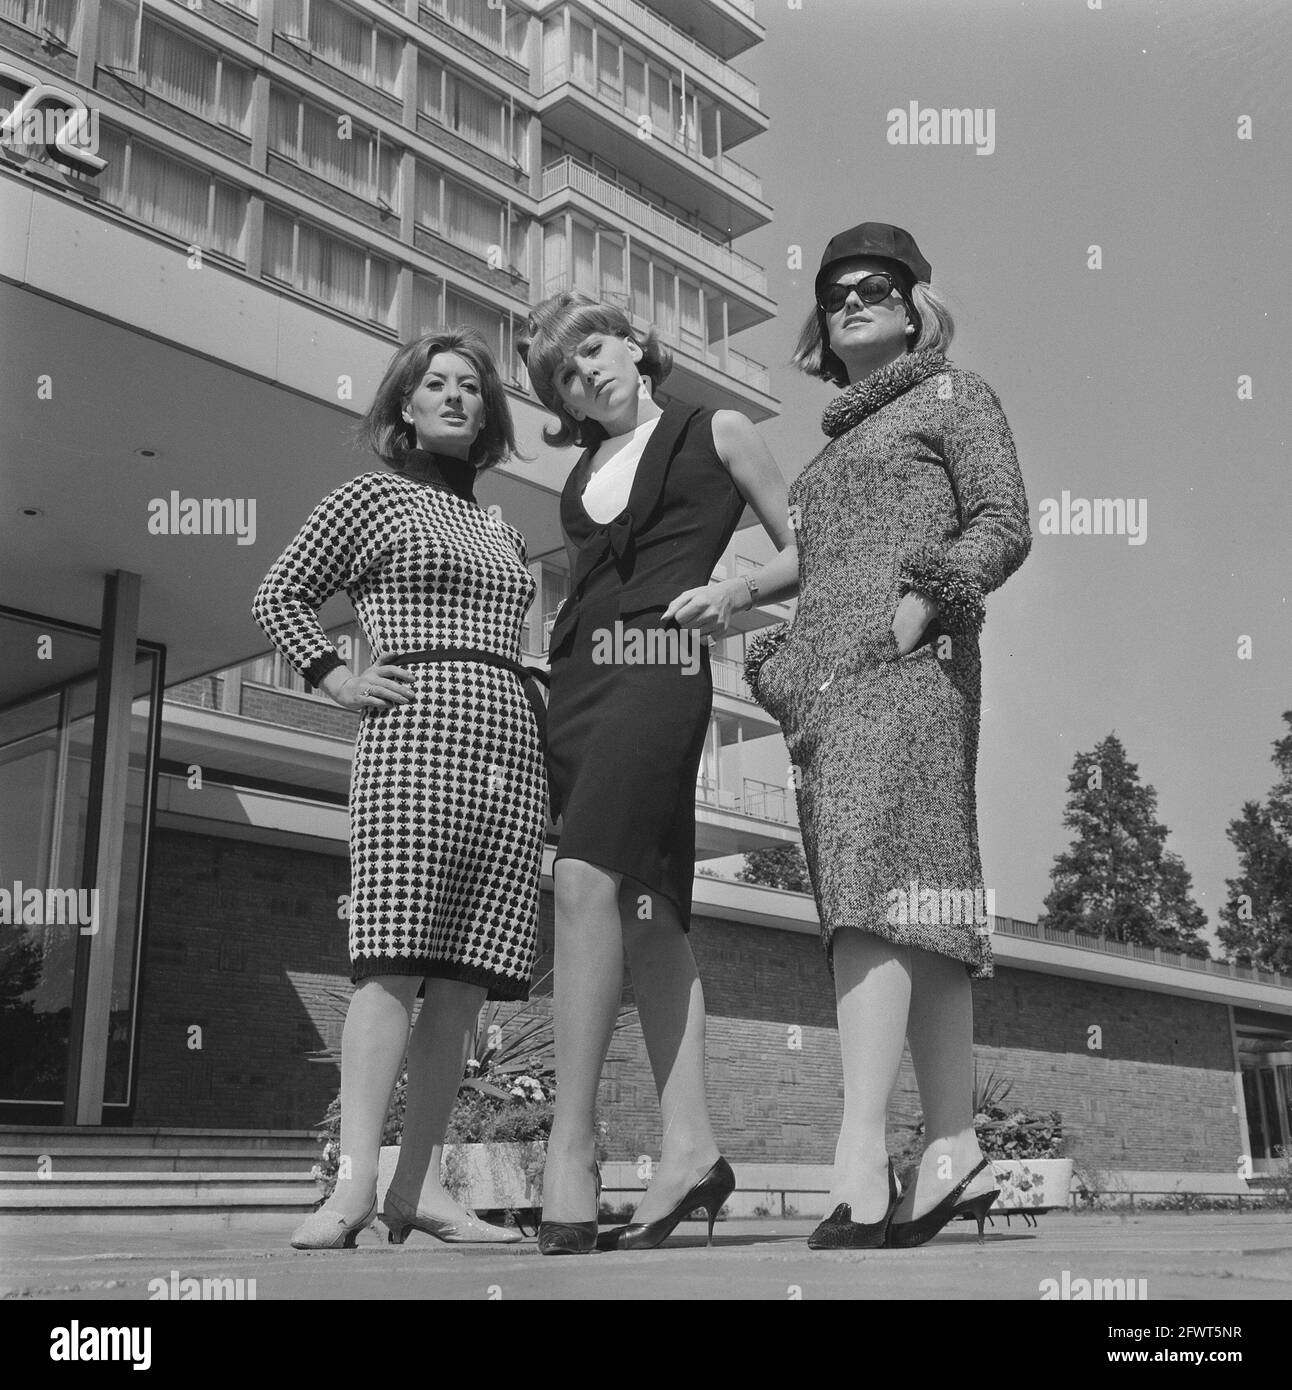 Mode hiver 1964 Banque de photographies et d'images à haute résolution -  Alamy